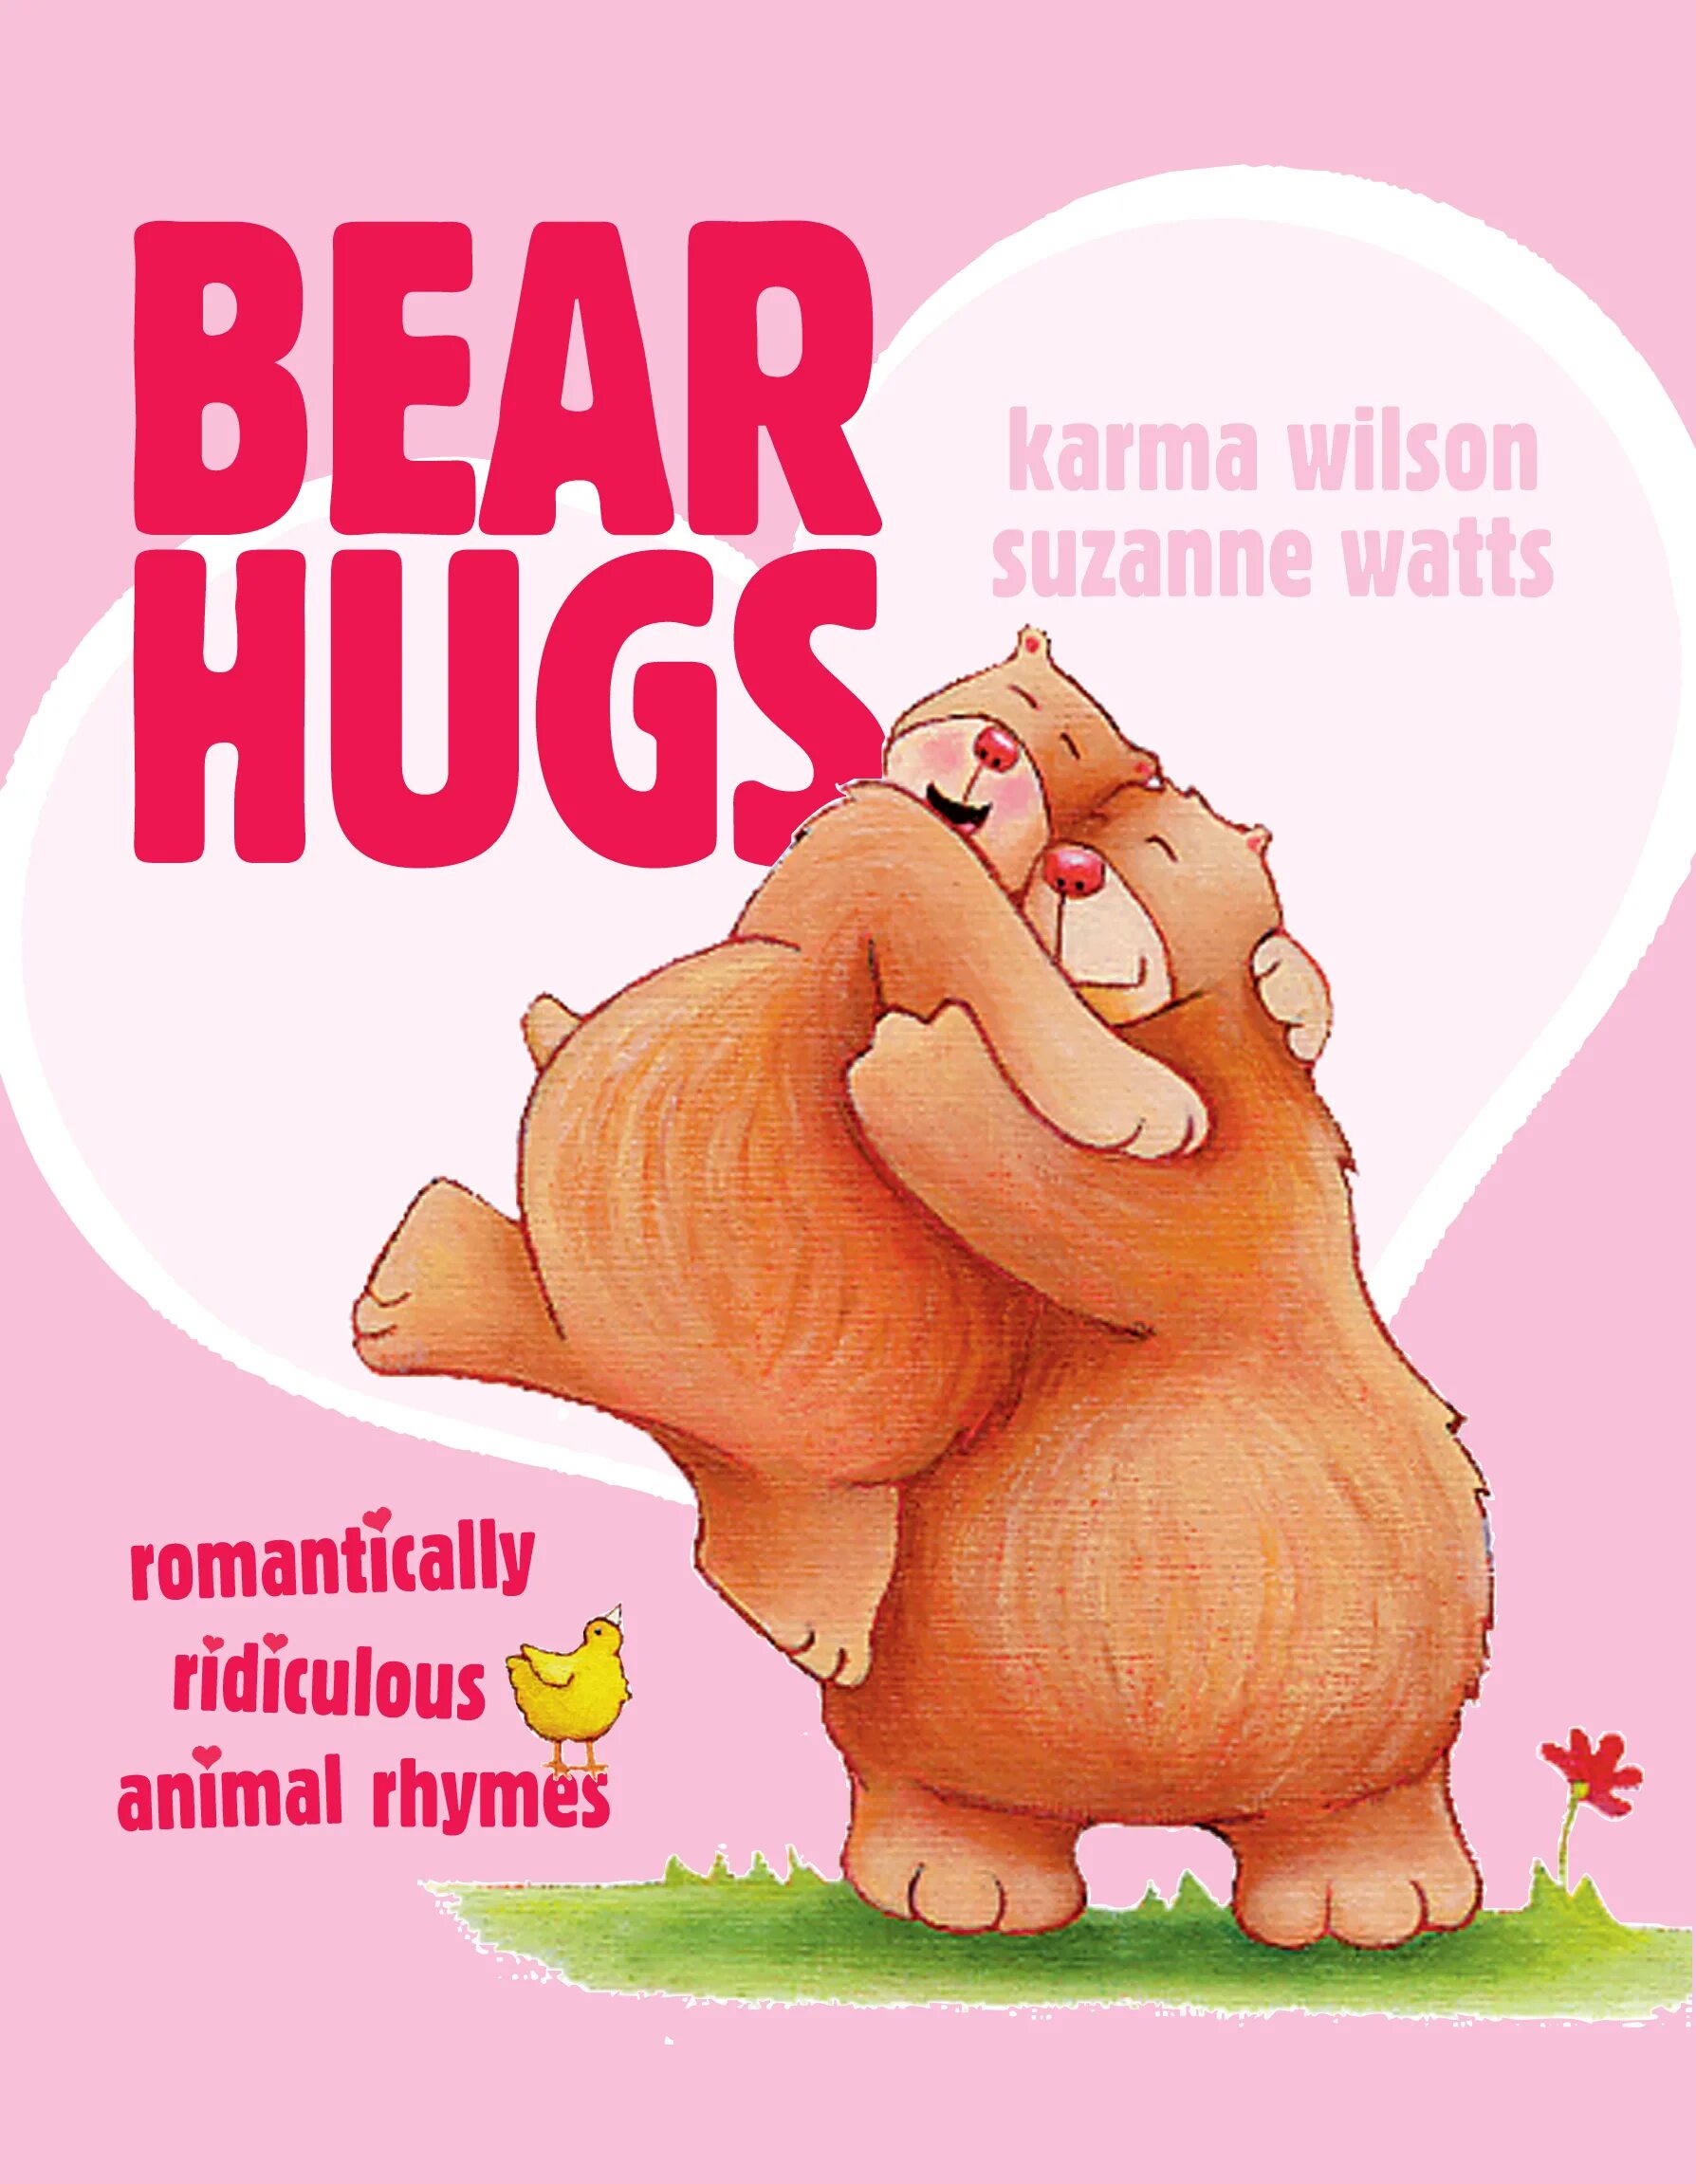 Bear bore born перевод на русский. Bearhug. Bear hug. Bear hug в английском. Born to hug.